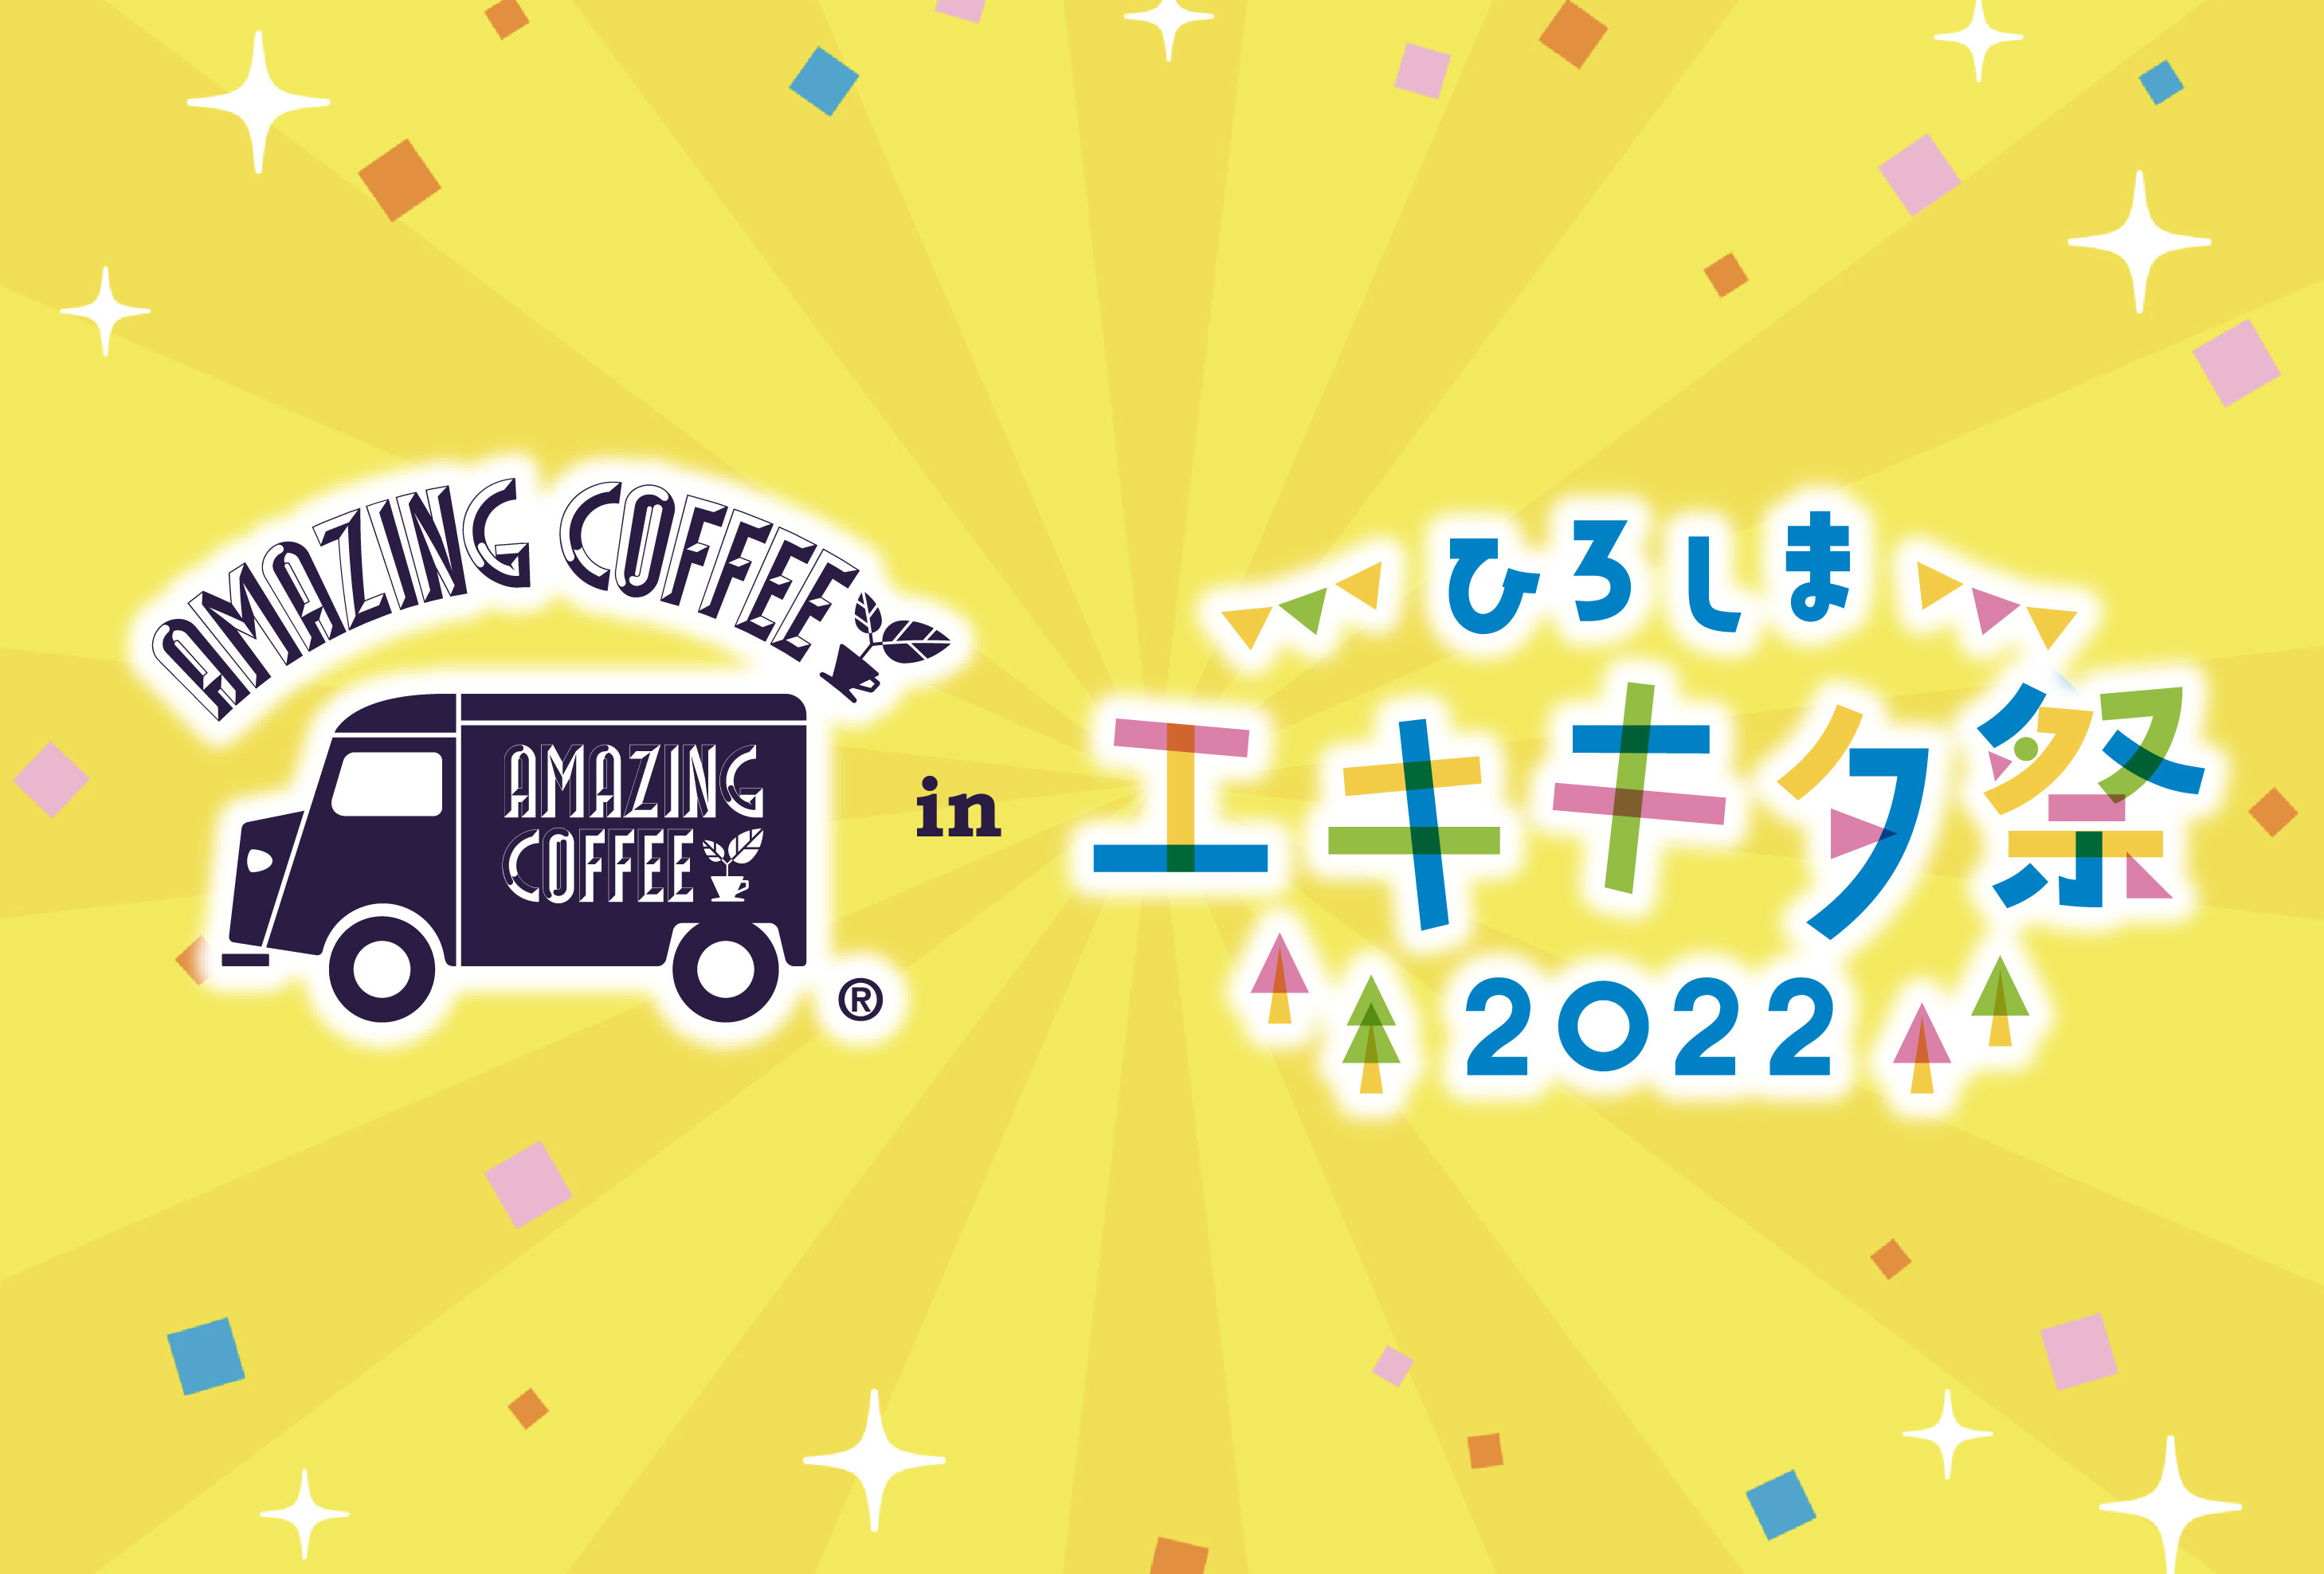 【9月18日(日)・9月19日(月・祝)2日間限定!!】☕️AMAZING COFFEE POP UP STORE in ひろしま エキキタ祭✨